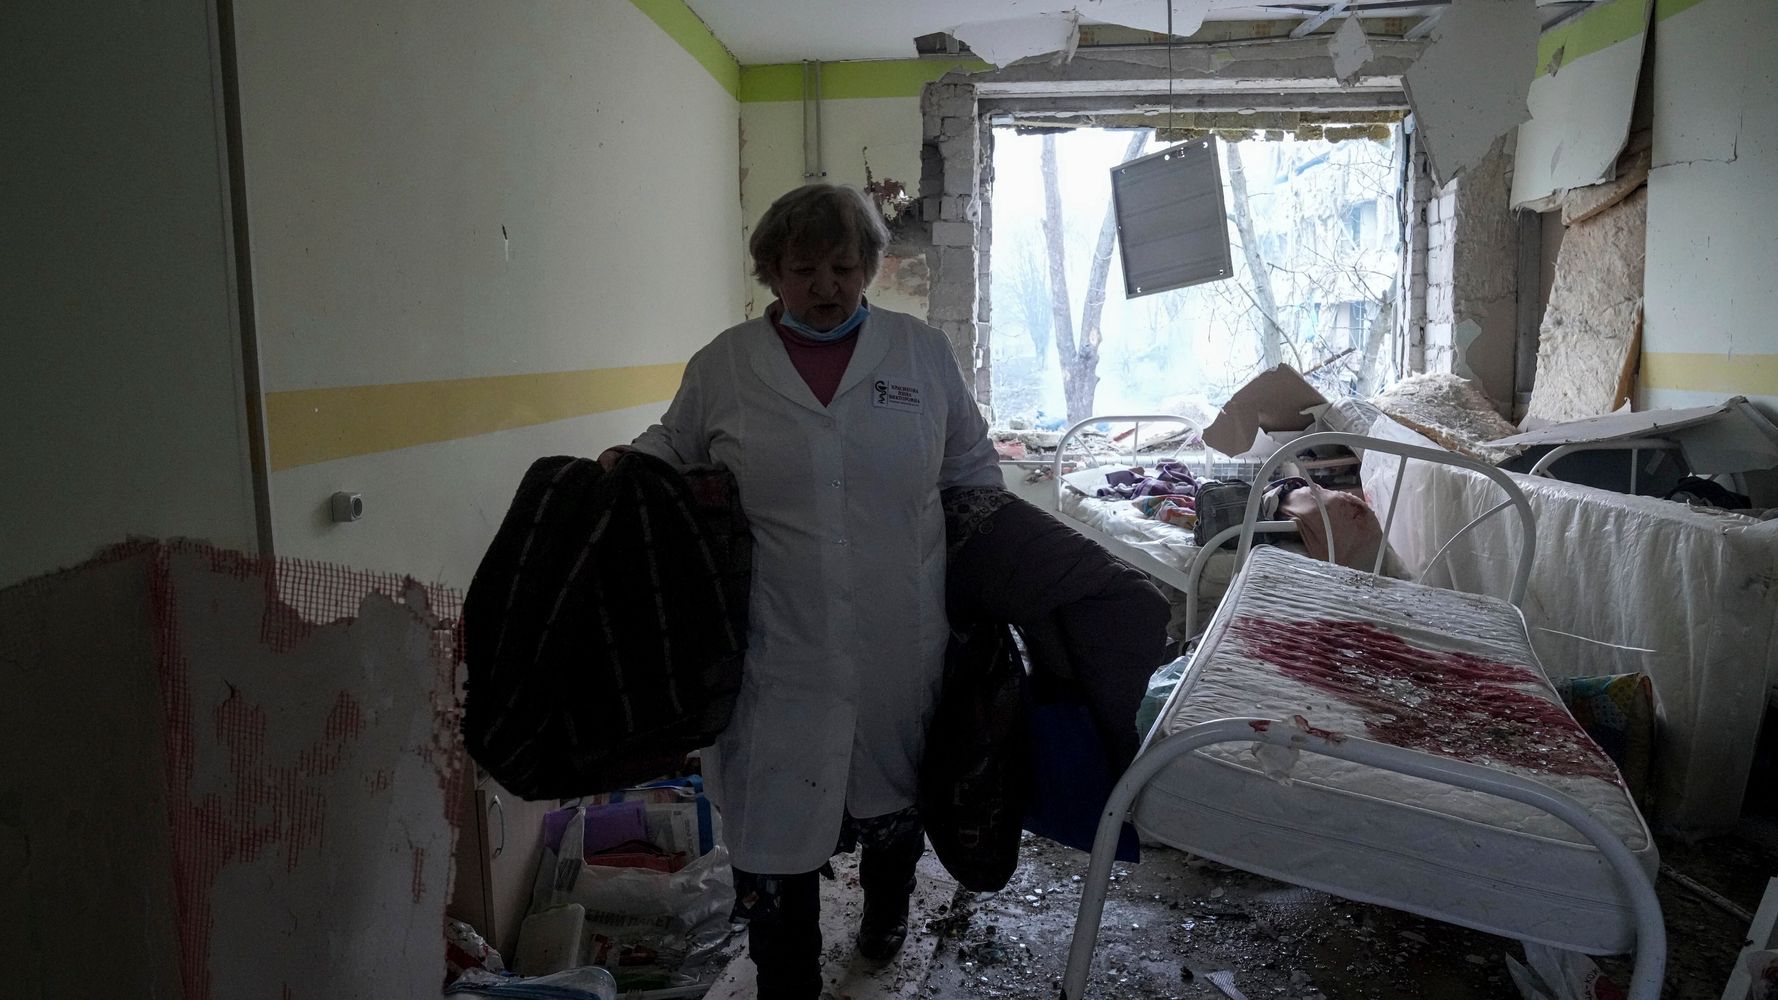 Des attaques russes frappent un hôpital pour enfants en Ukraine, selon des responsables